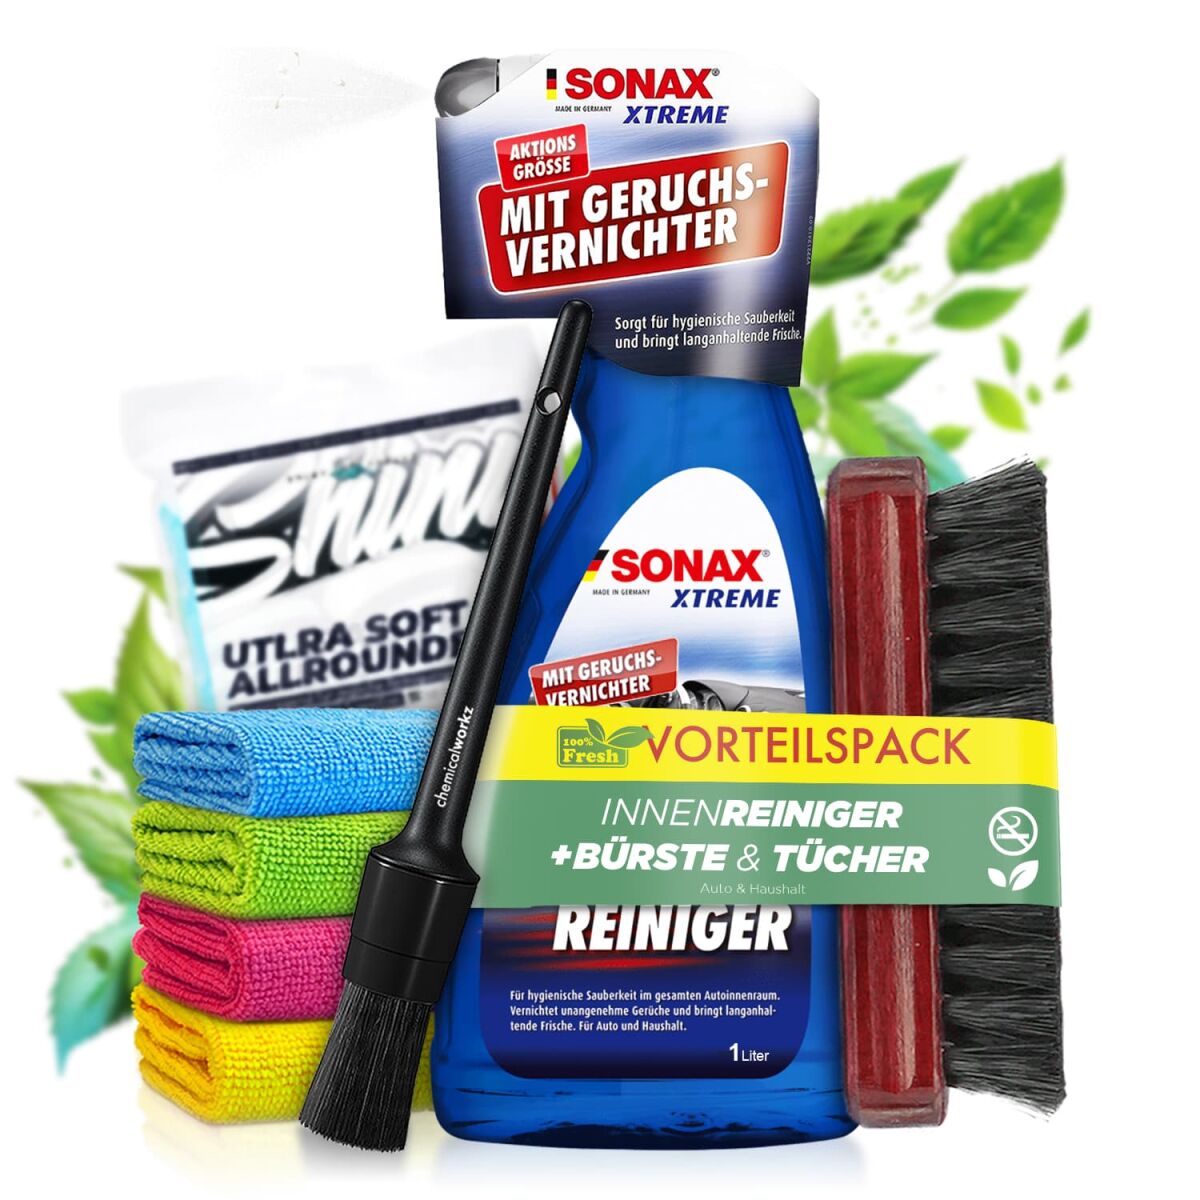 Sonax Xtreme Auto-Innen-Reiniger speziell für die hygienische Sauberkeit im  Auto und Haushalt kaufen